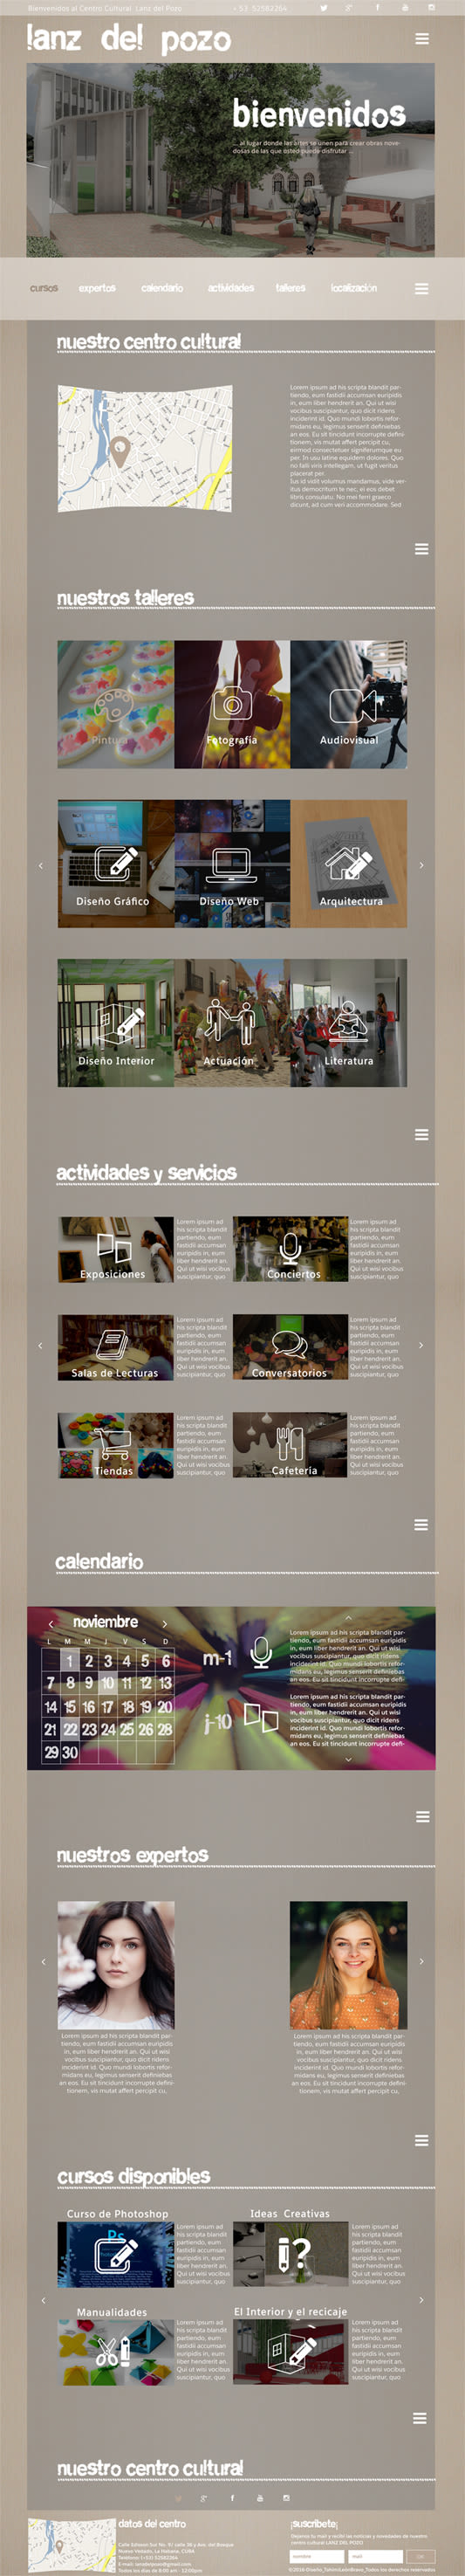 Diseño web para centro cultural Lanz del Pozo 1